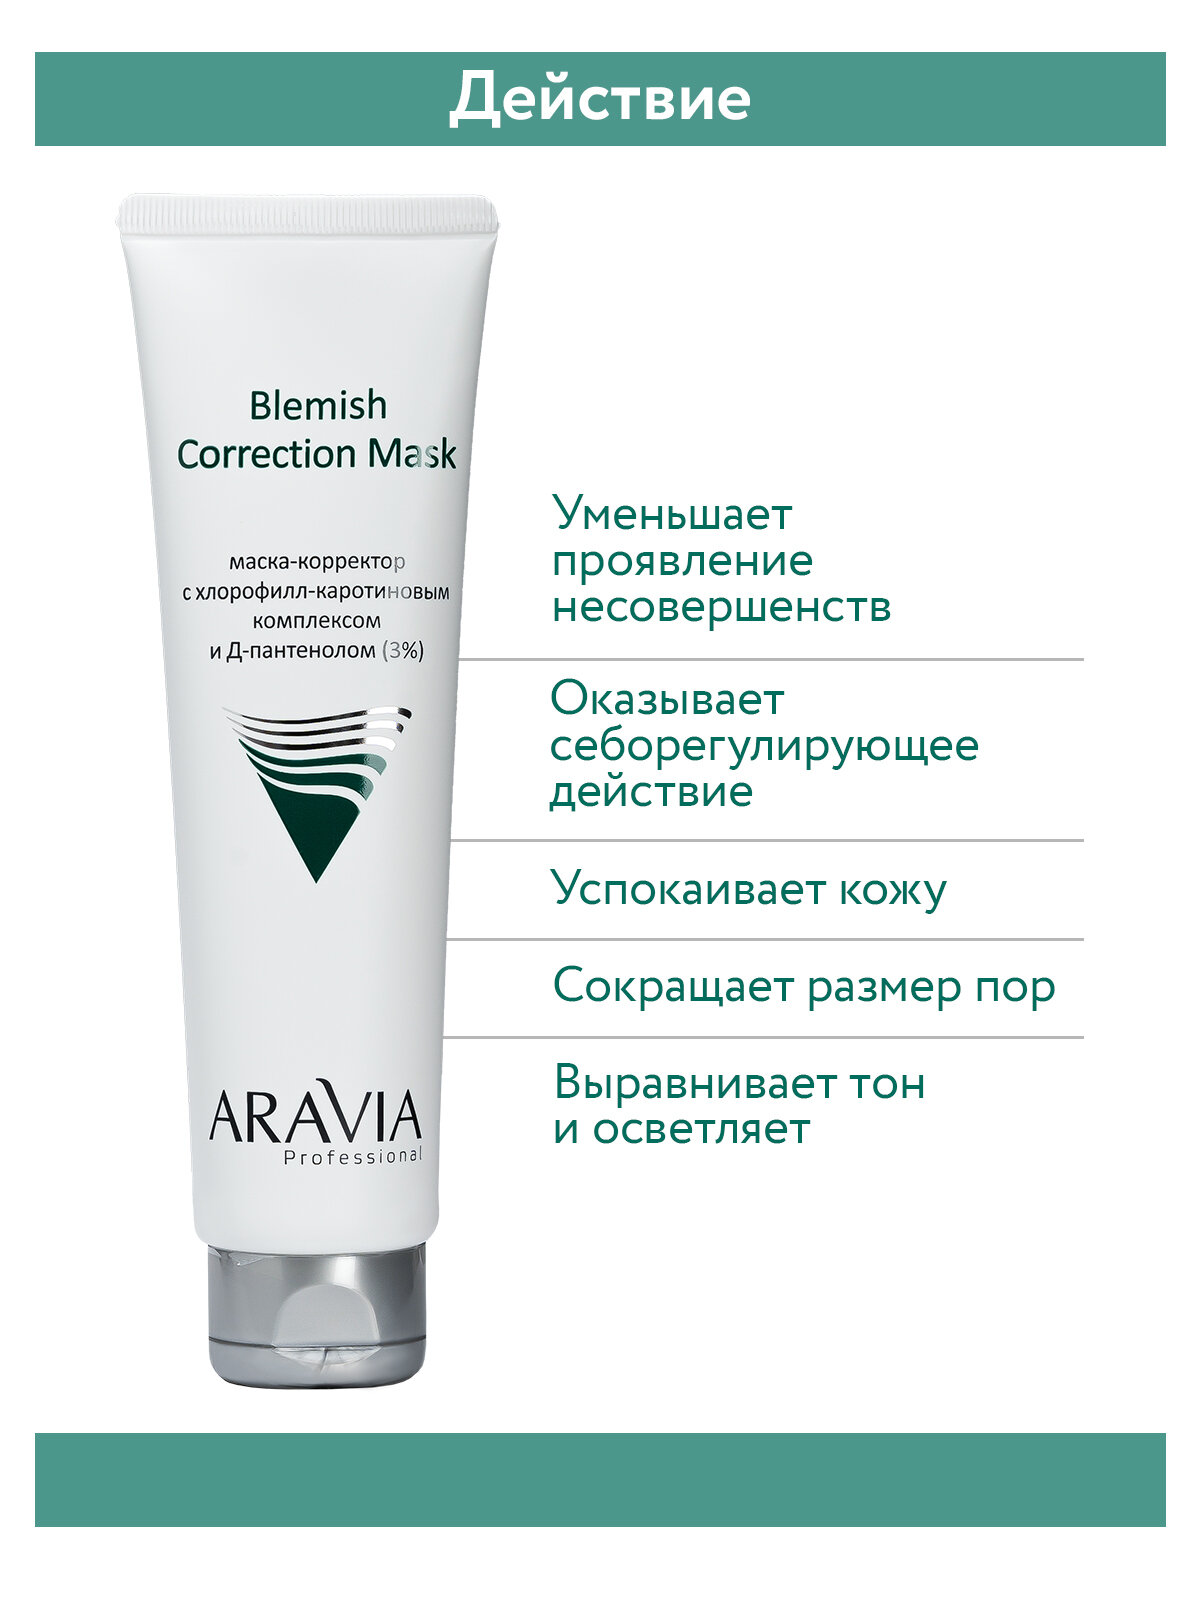 ARAVIA Маска-корректор для лица против несовершенств с хлорофилл-каротиновым комплексом и Д-пантенолом (3%) Blemish Correction Mask, 100 мл